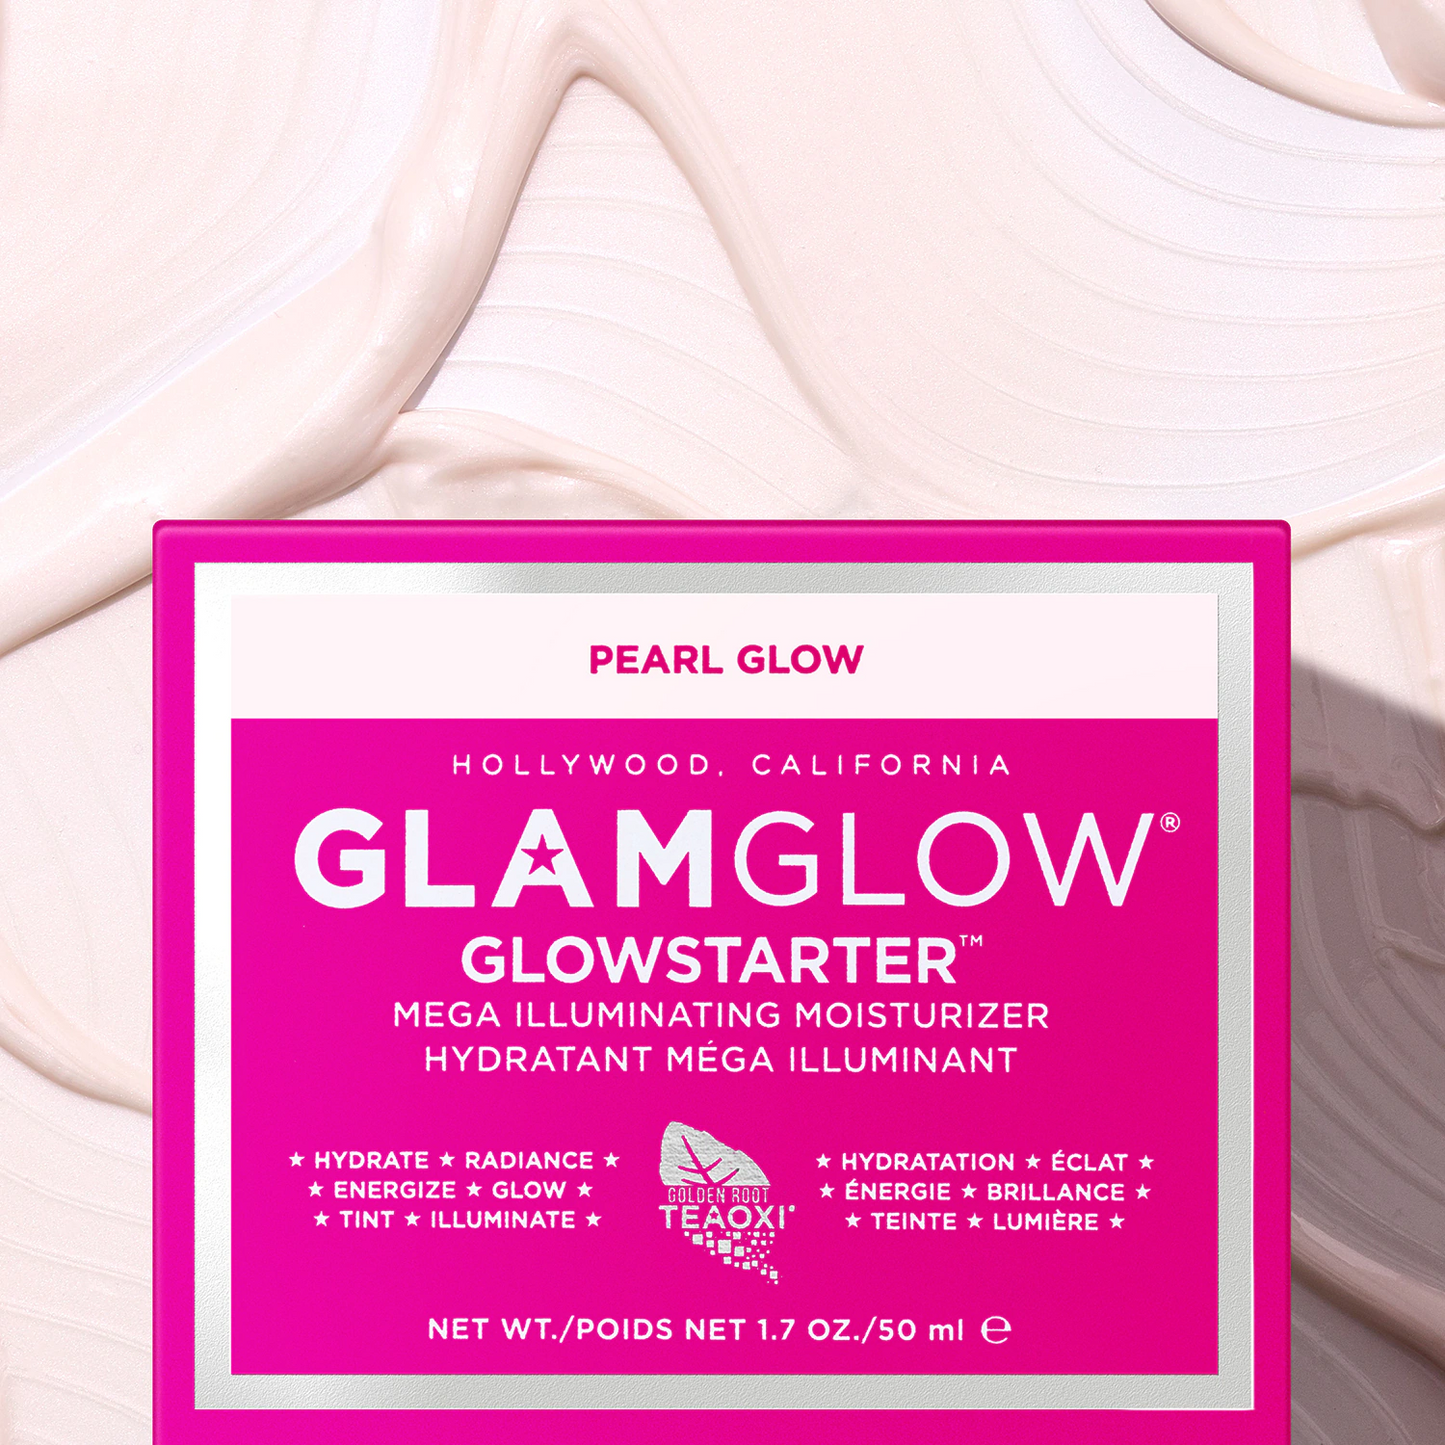 Glamglow Glowstarter Mega Illuminating Moisturizer